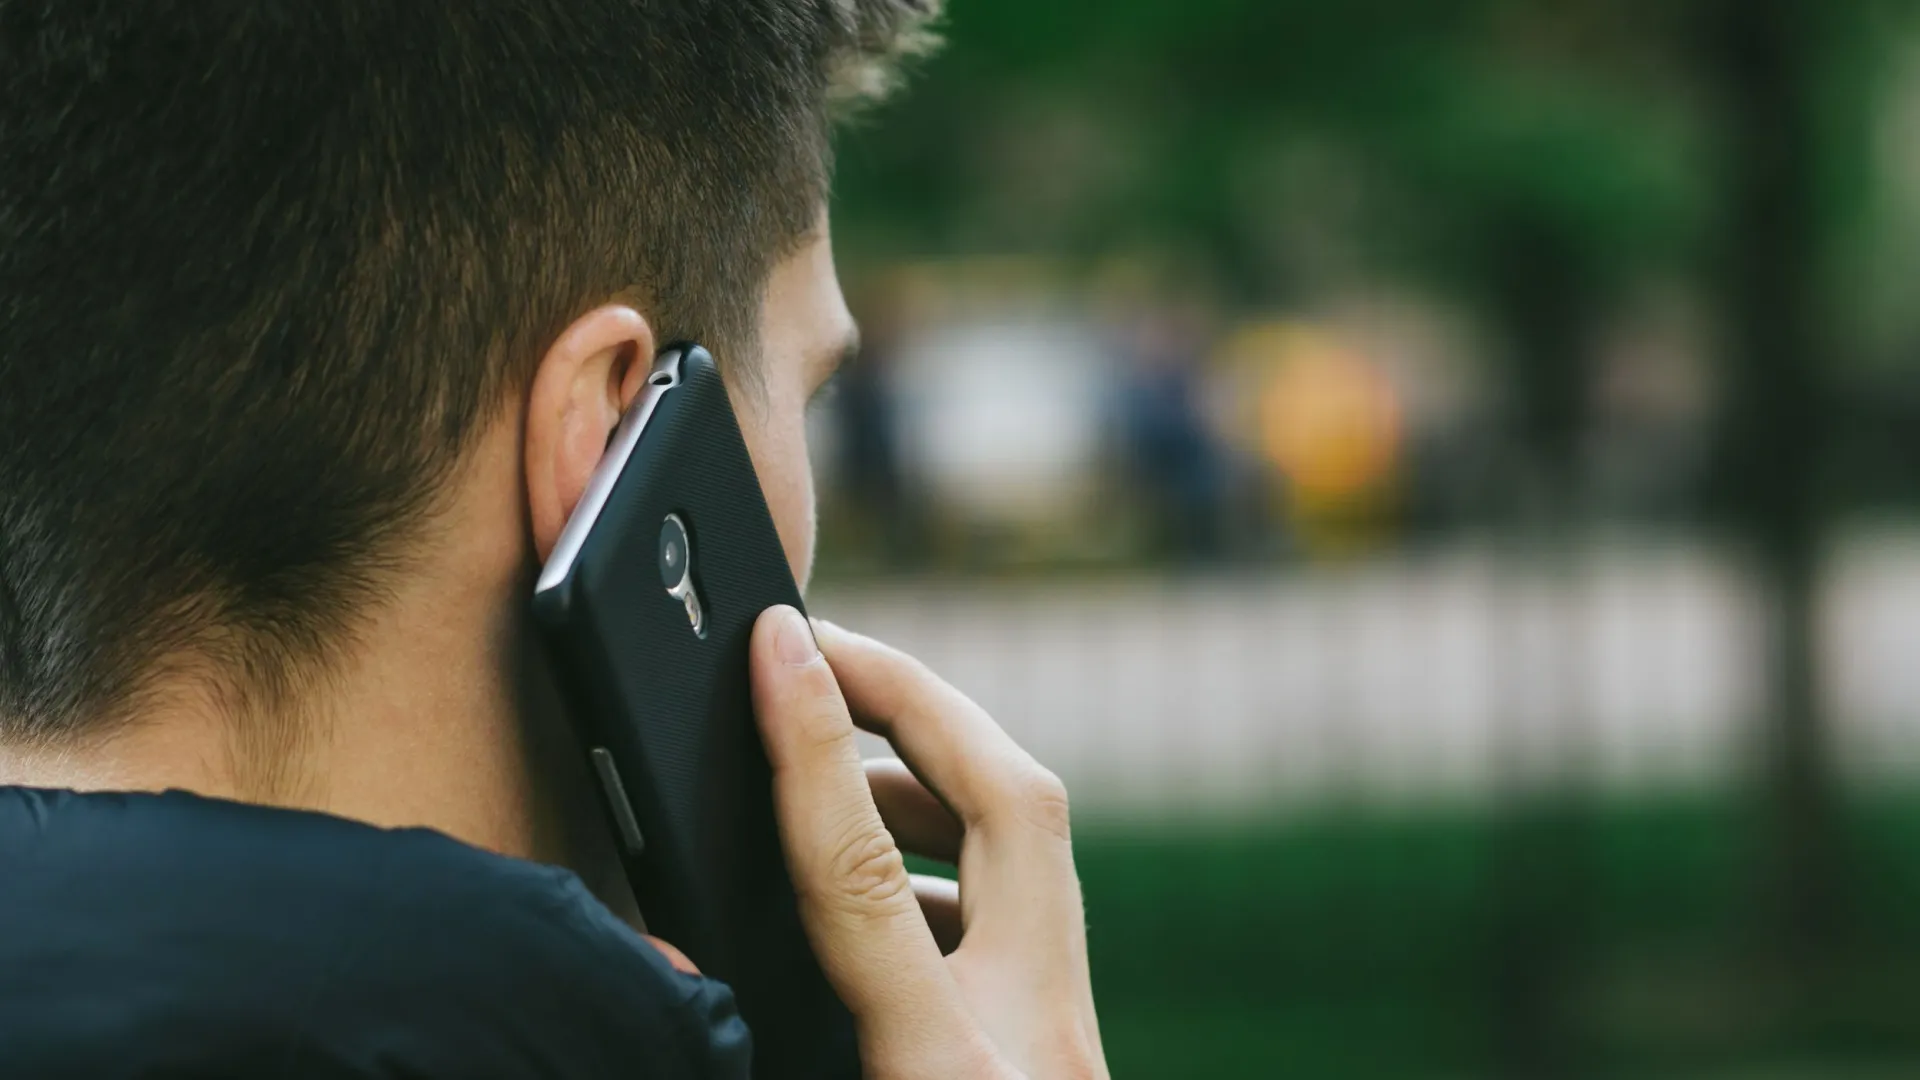 Тайные разговоры по телефону — верный признак изменщика. Фото: Estam / Shutterstock / Fotodom